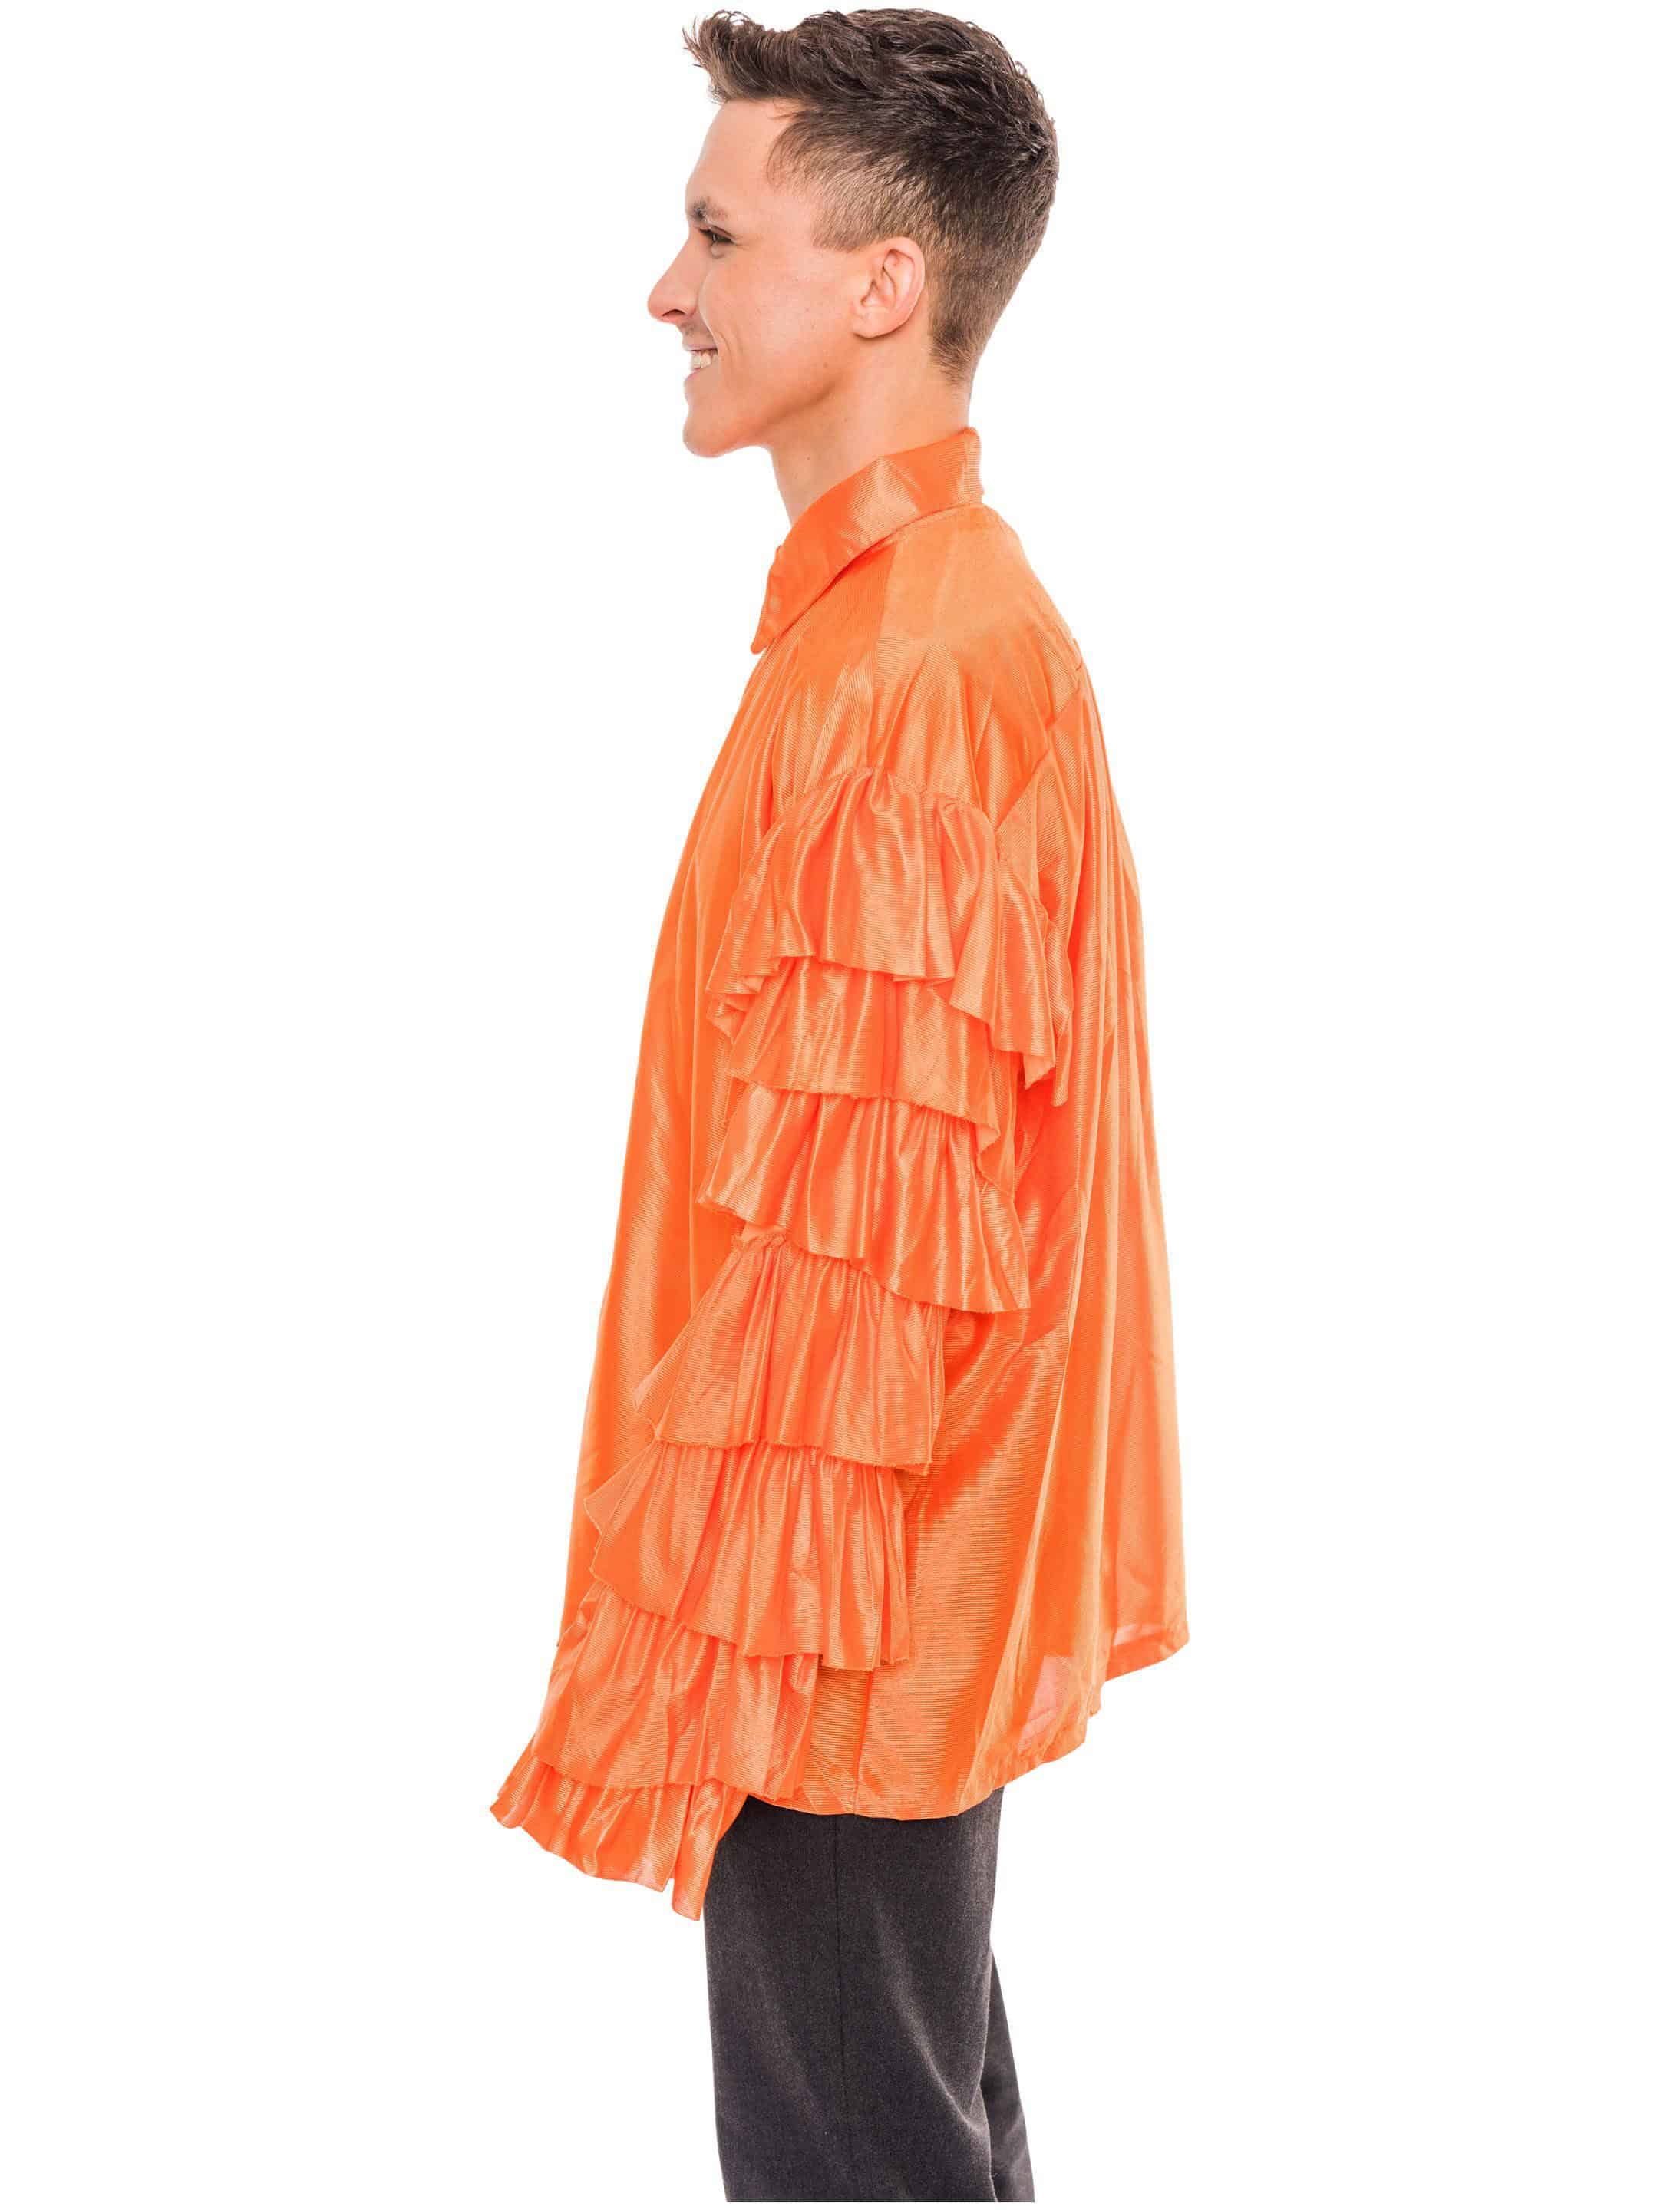 Rüschenhemd Limbo orange one size